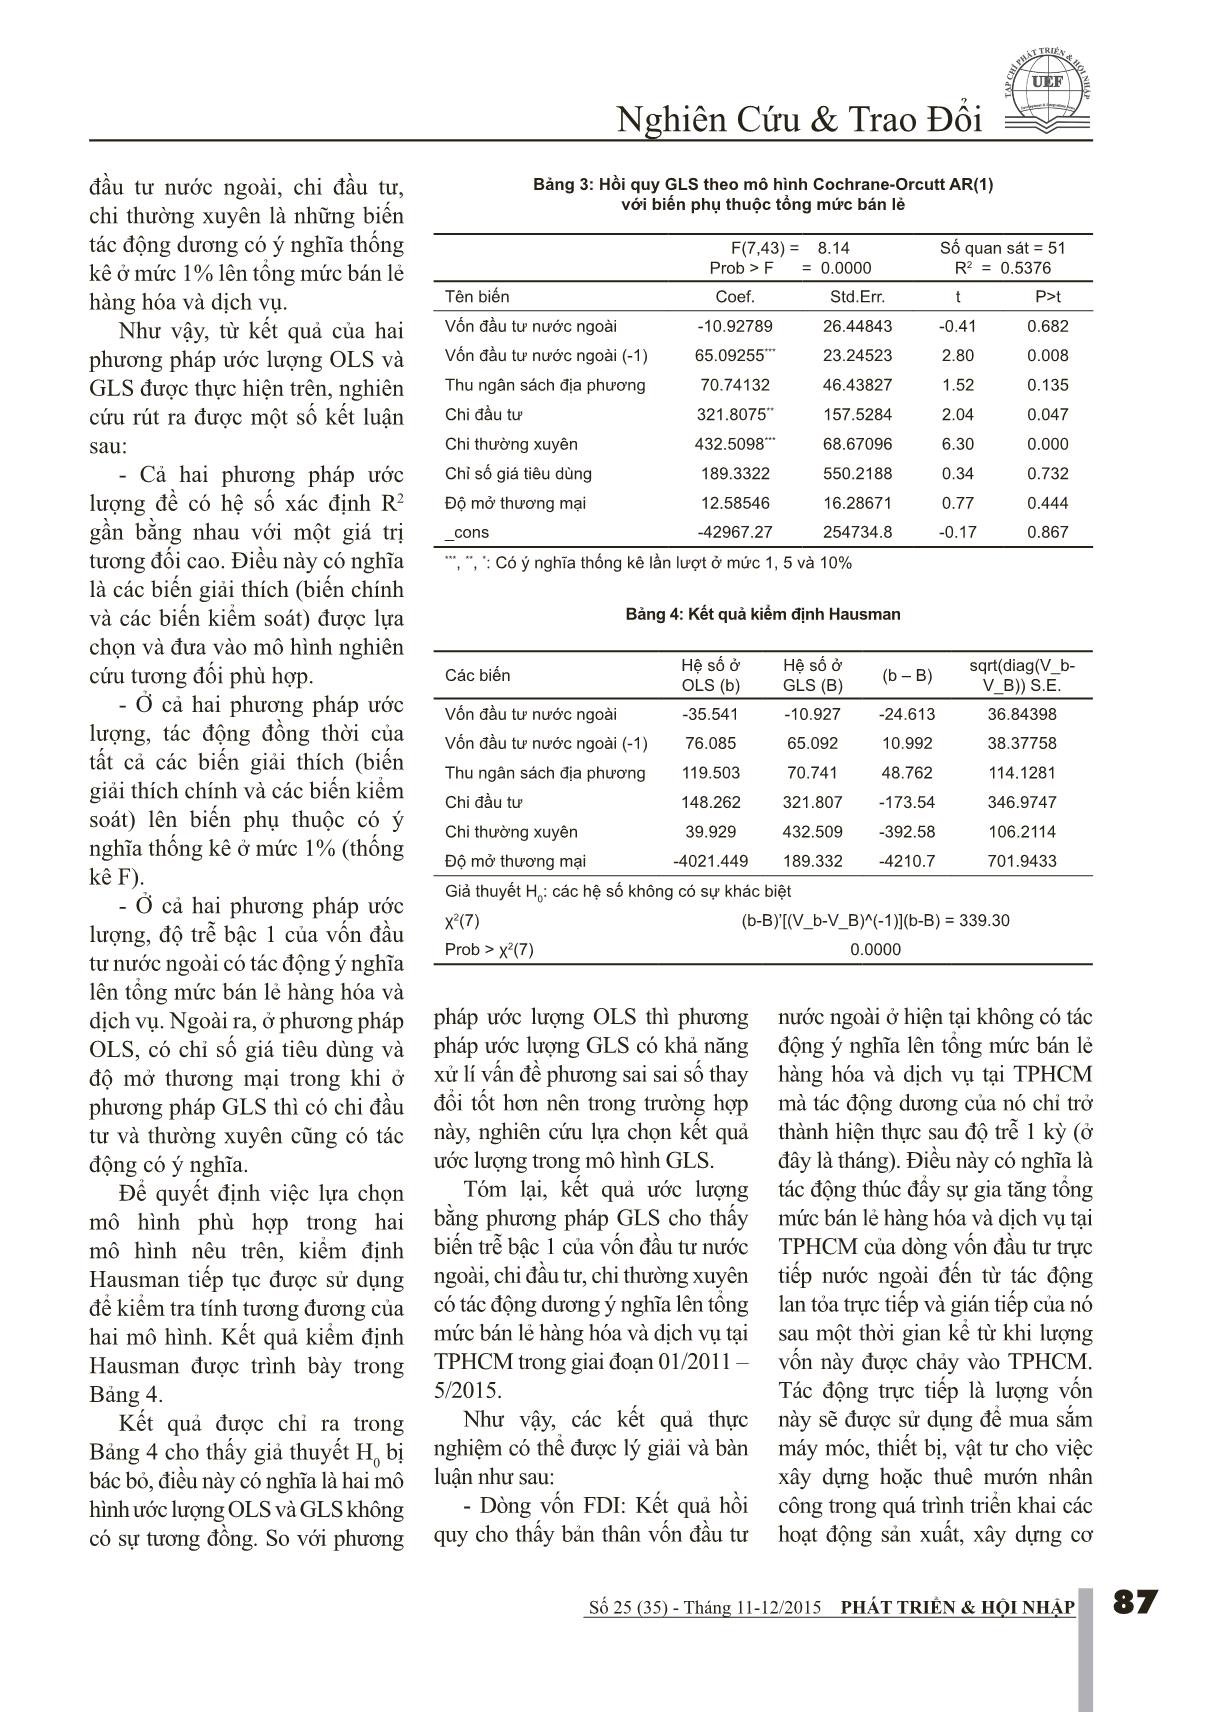 Tác động dòng vốn FDI đến tổng mức bán lẻ và hàng hóa dịch vụ trên địa bàn thành phố Hồ Chí Minh trang 4